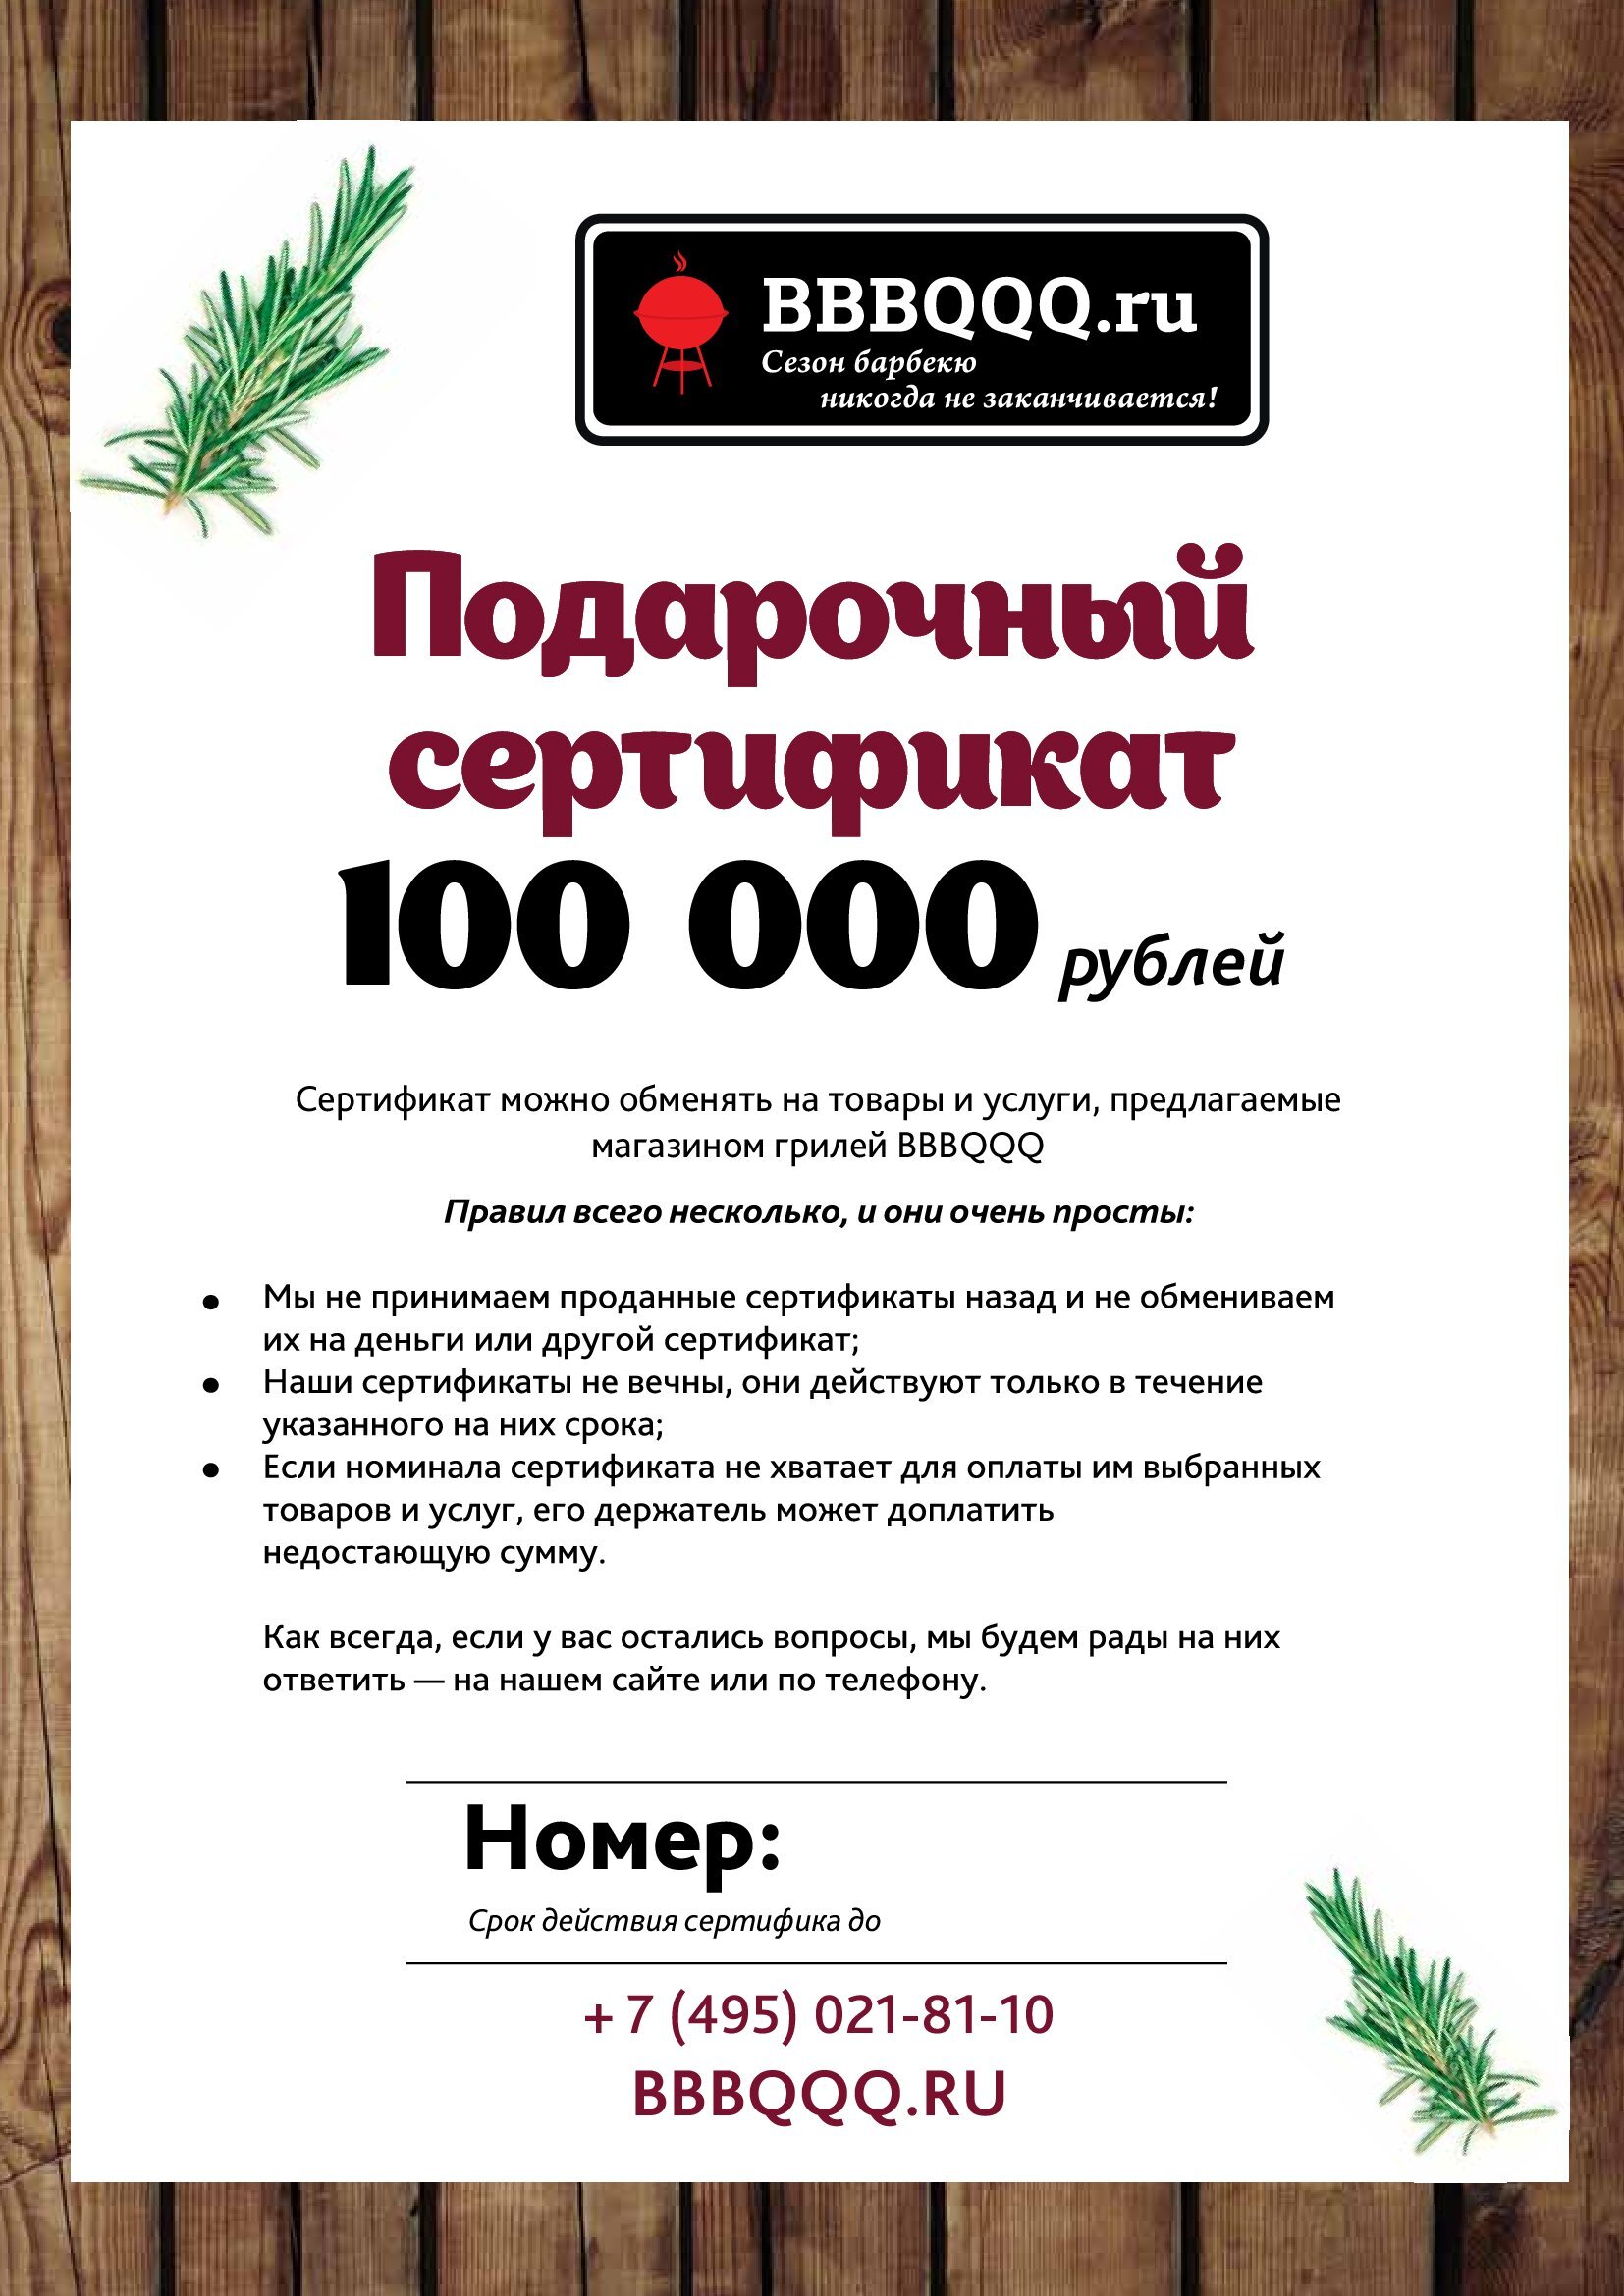 Подарочный сертификат BBBQQQ 100000 руб